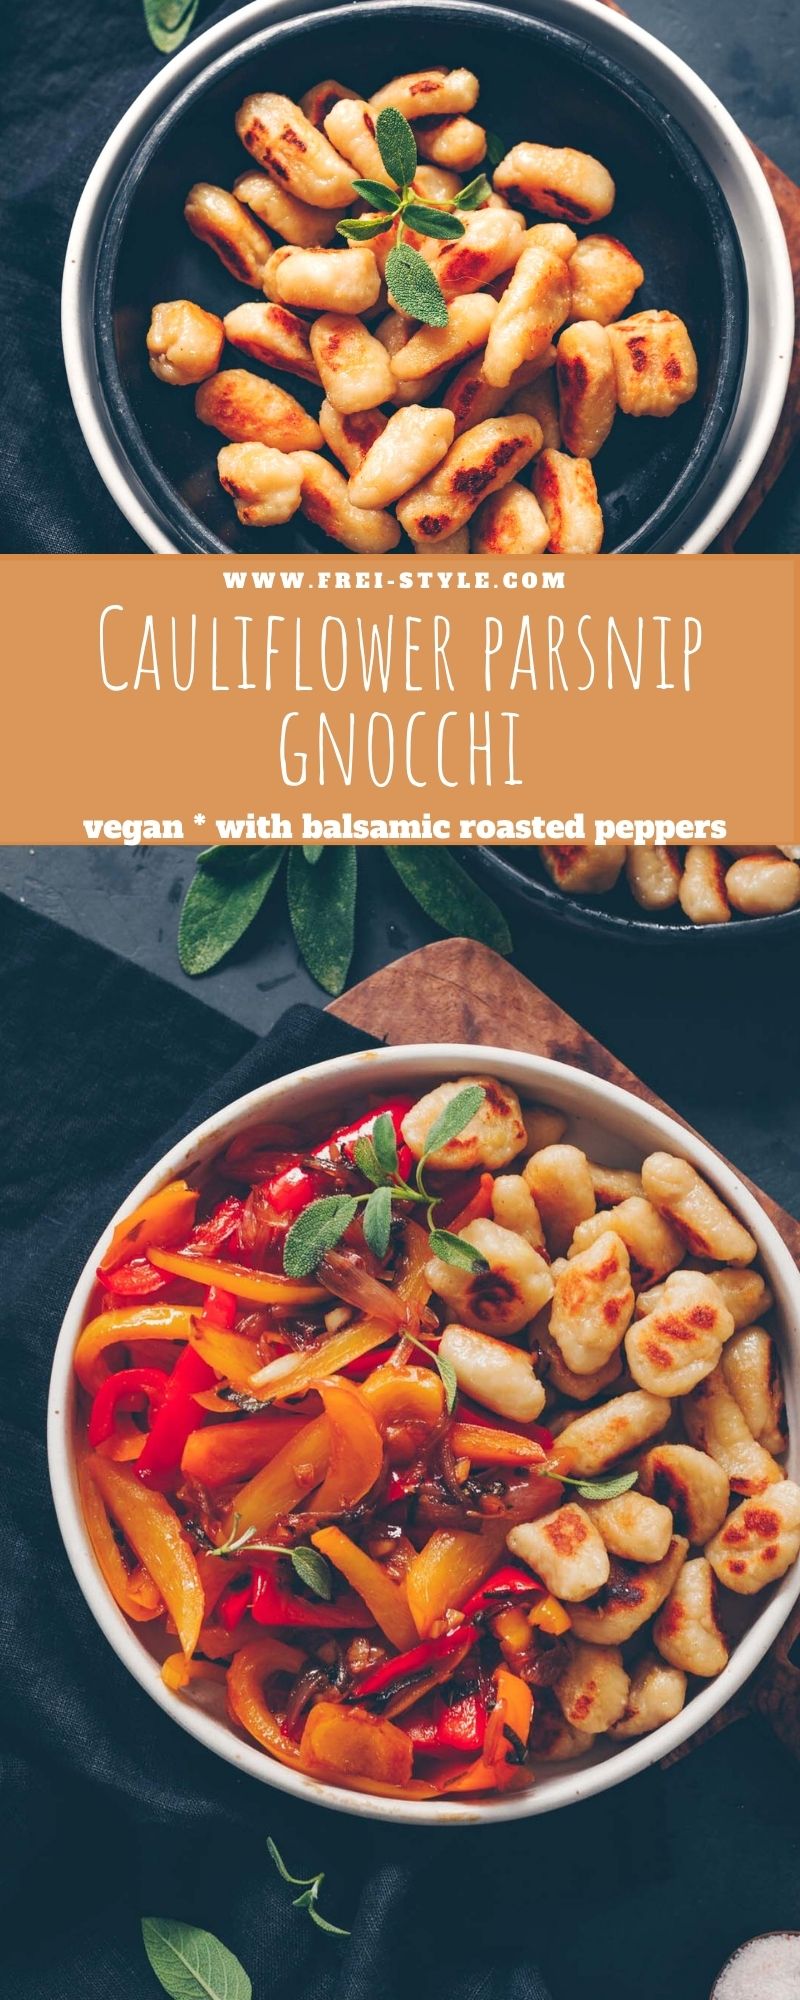 Cauliflower parsnip gnocchi